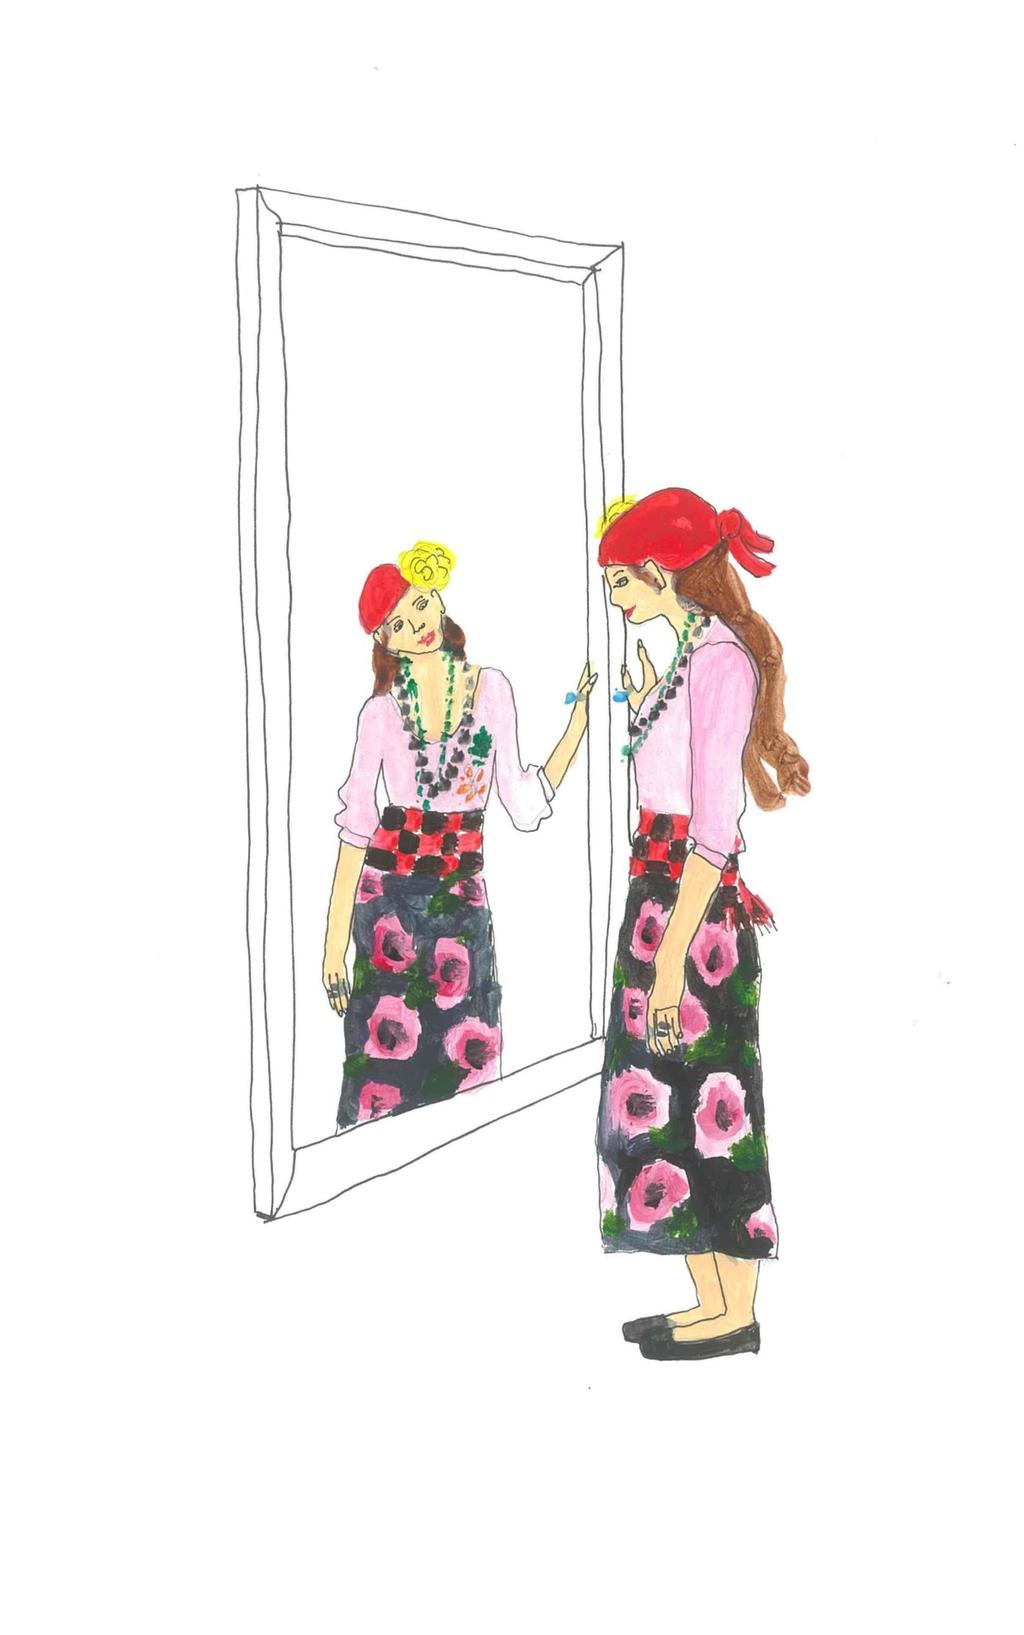 Leonora un Dagmāra iet ķekatās Māras Bērztīsas teksts Amandas Krūmiņas ilustrācijas Leonora stāvēja pie spoguļa un gudroja, kā vēl izgreznoties.